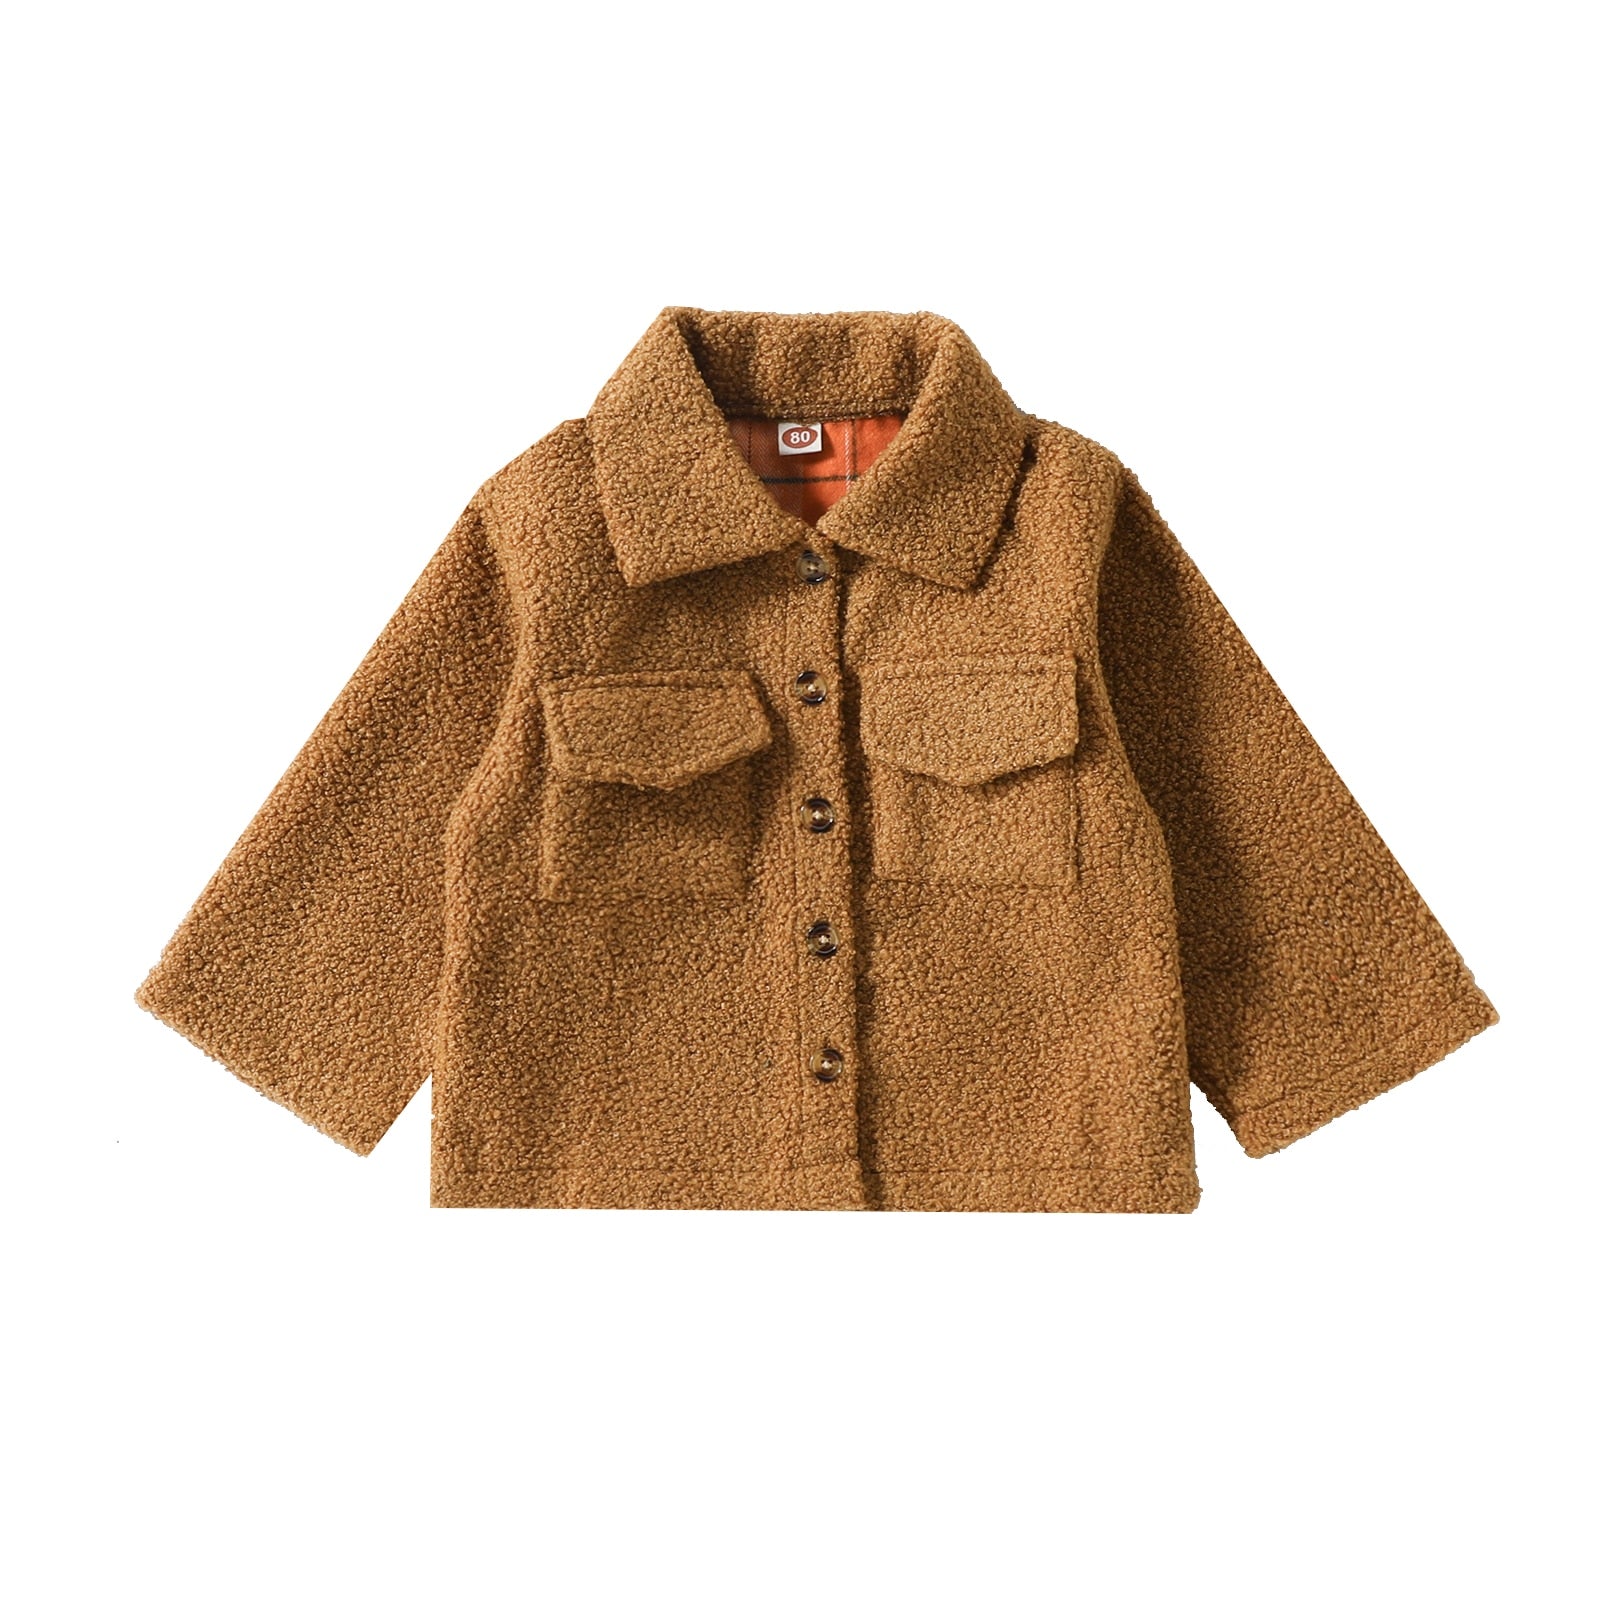 Lapel Jacket Baby Boy Girl | Plaid Double-Sided Coat